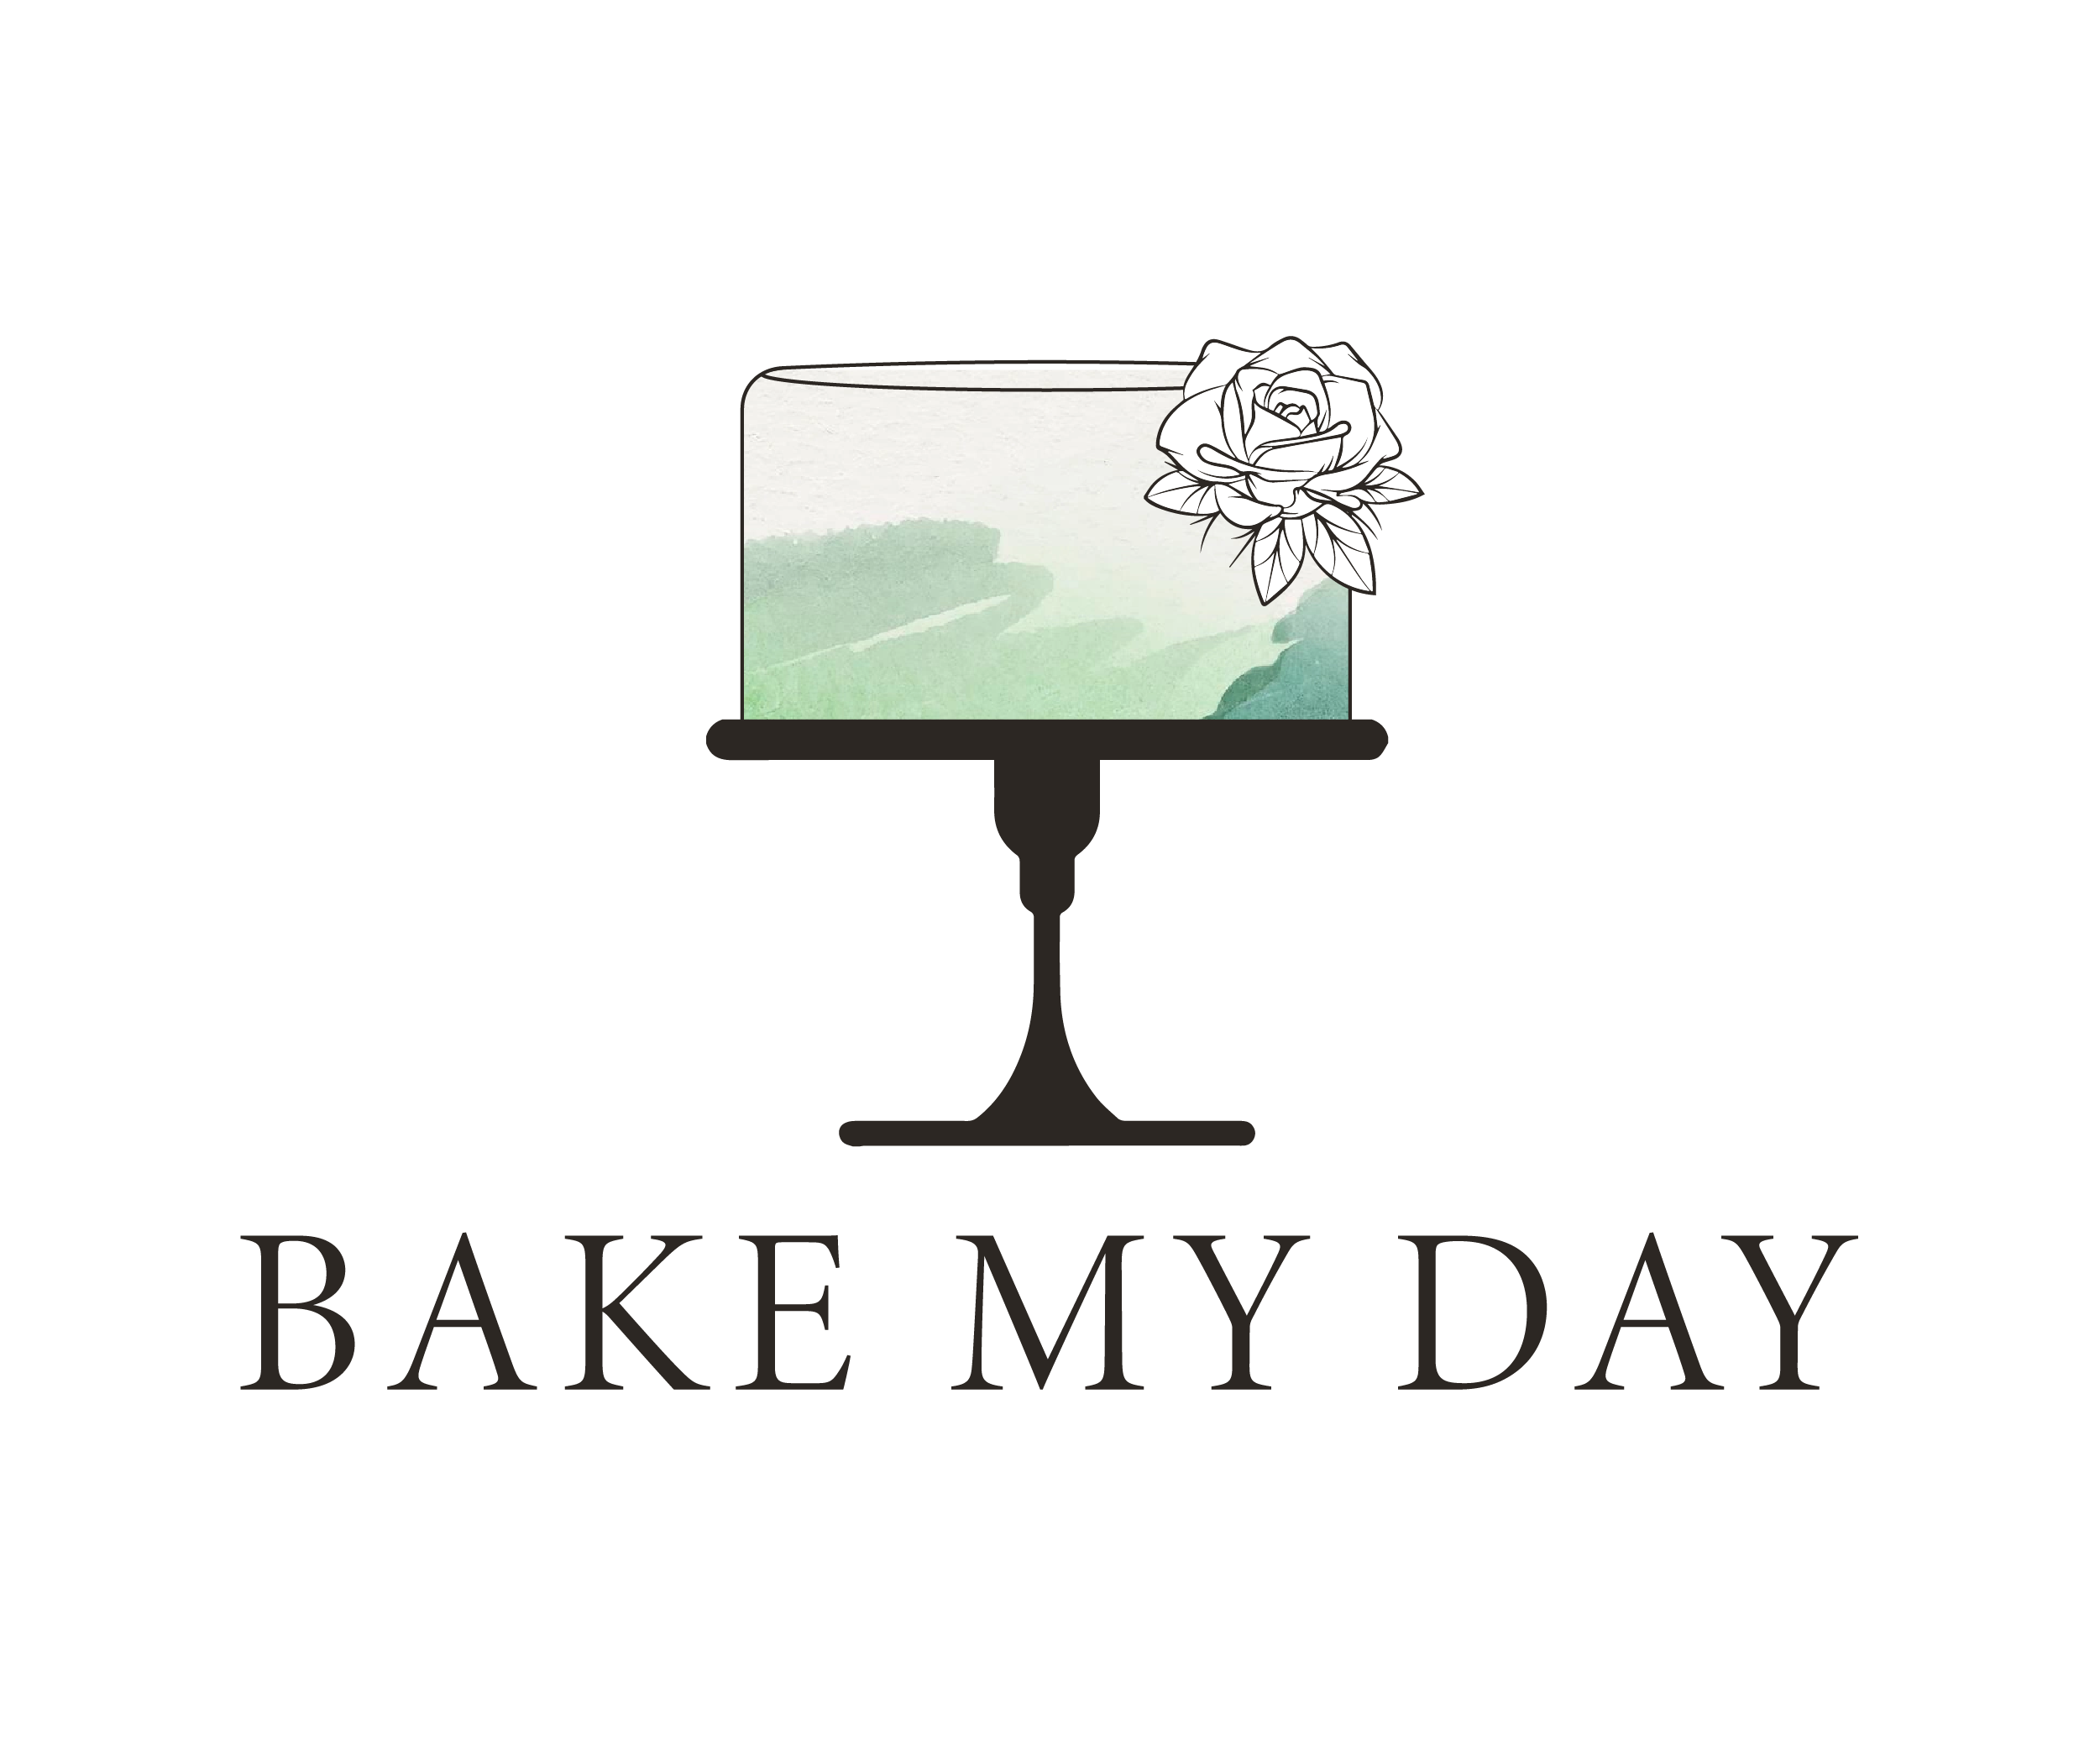 Lauren Dingle - Owner - Cake My Day Bakery | LinkedIn